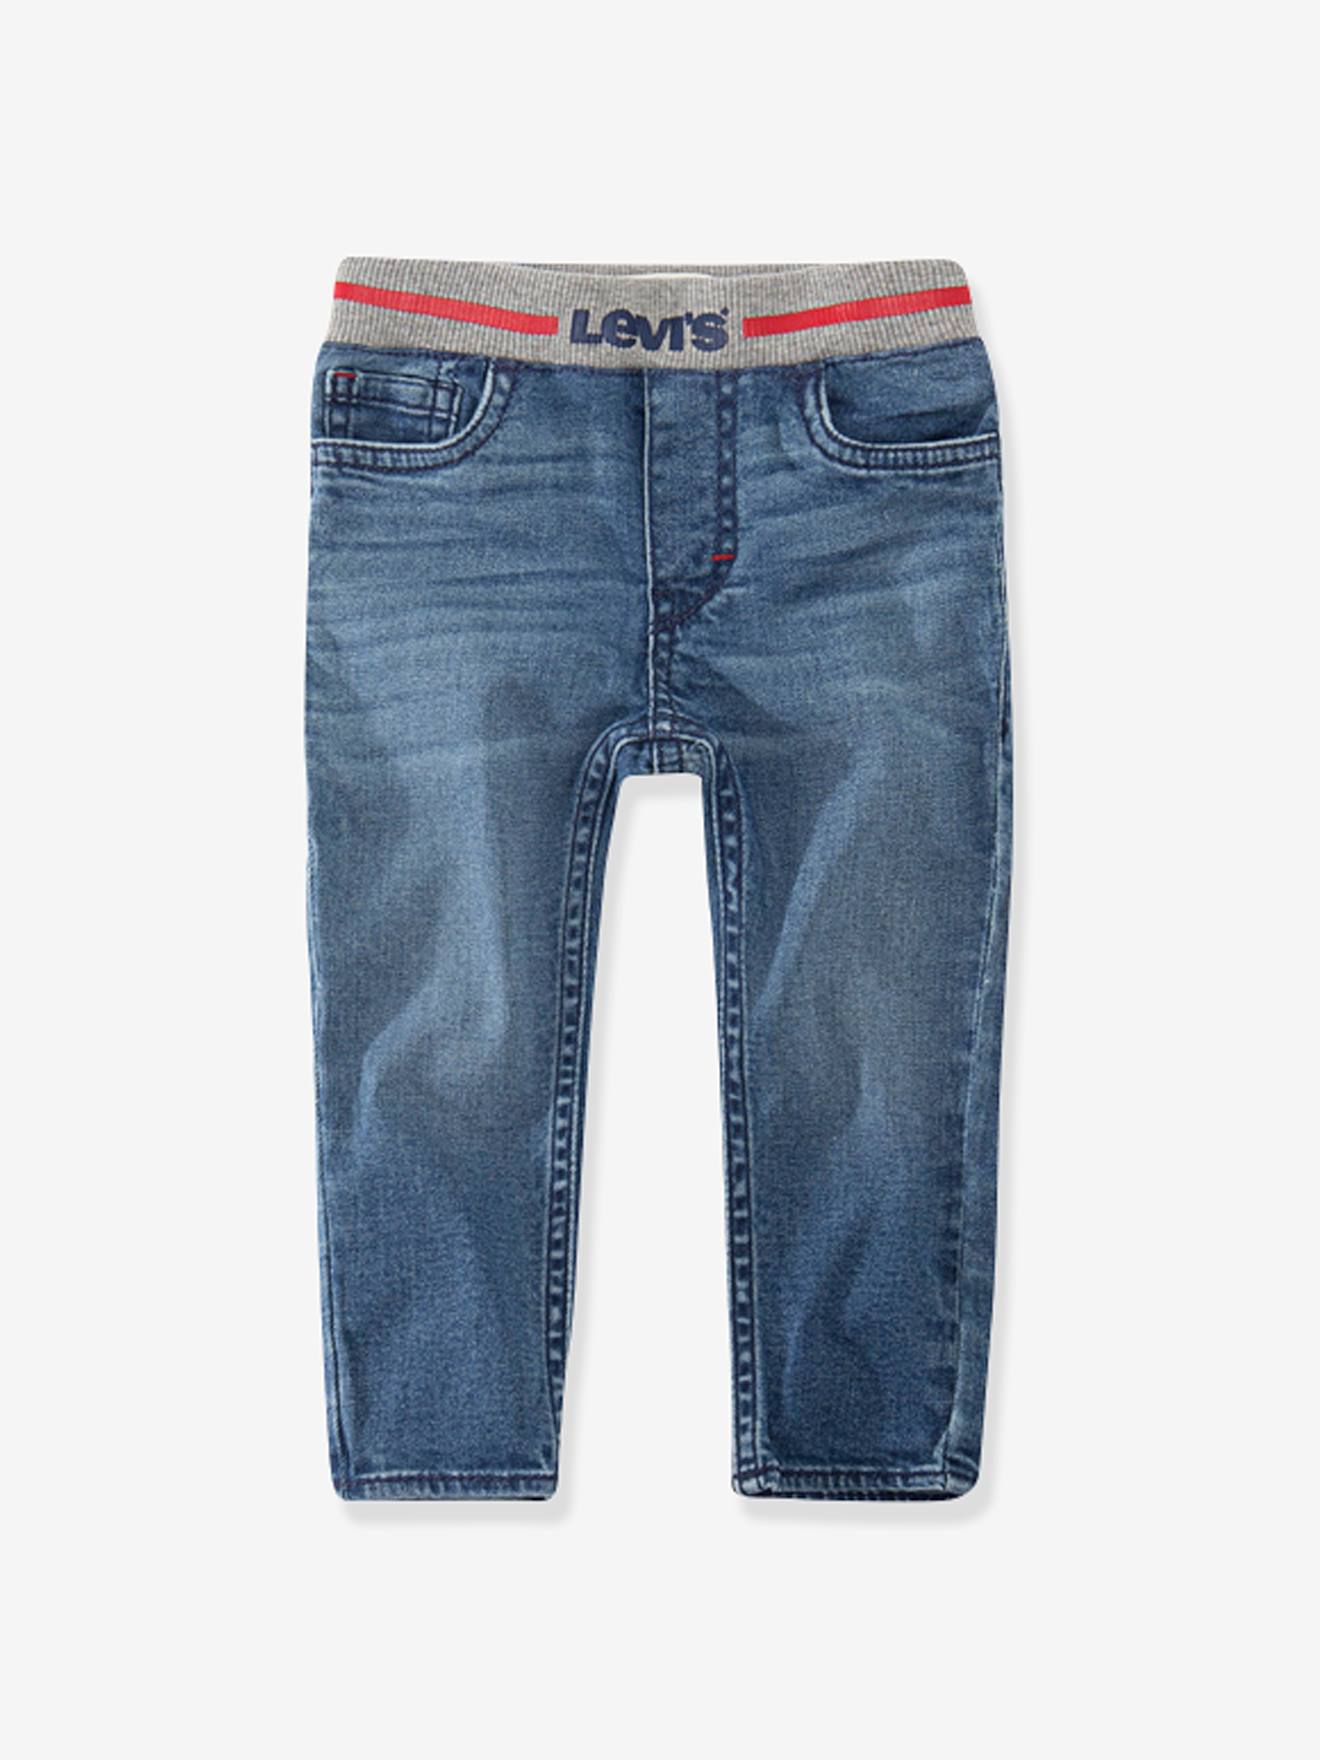 Jeans LVB skinny dobby Pull on voor jongens Levi's blauw